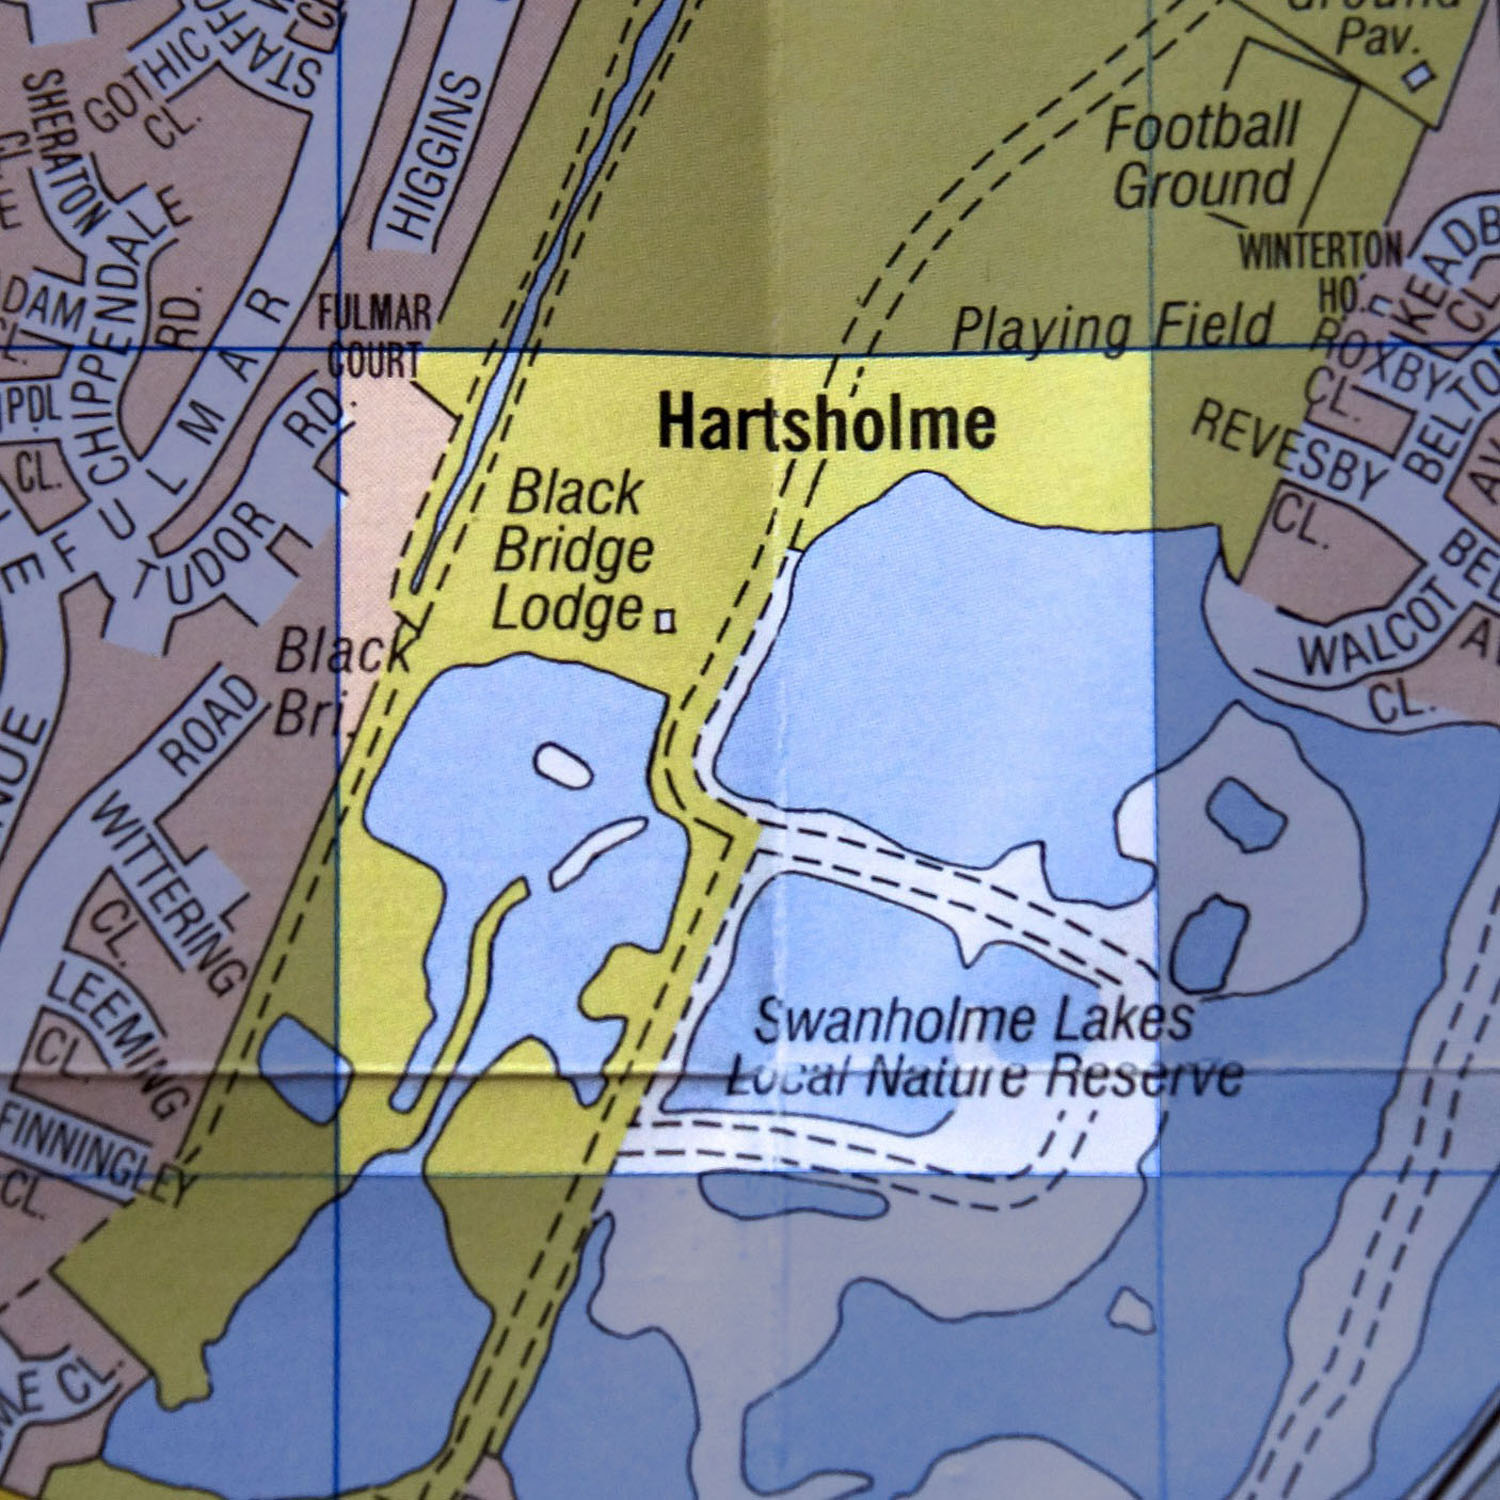 F15 Swanholme Nature Reserve/Hartsholme Park